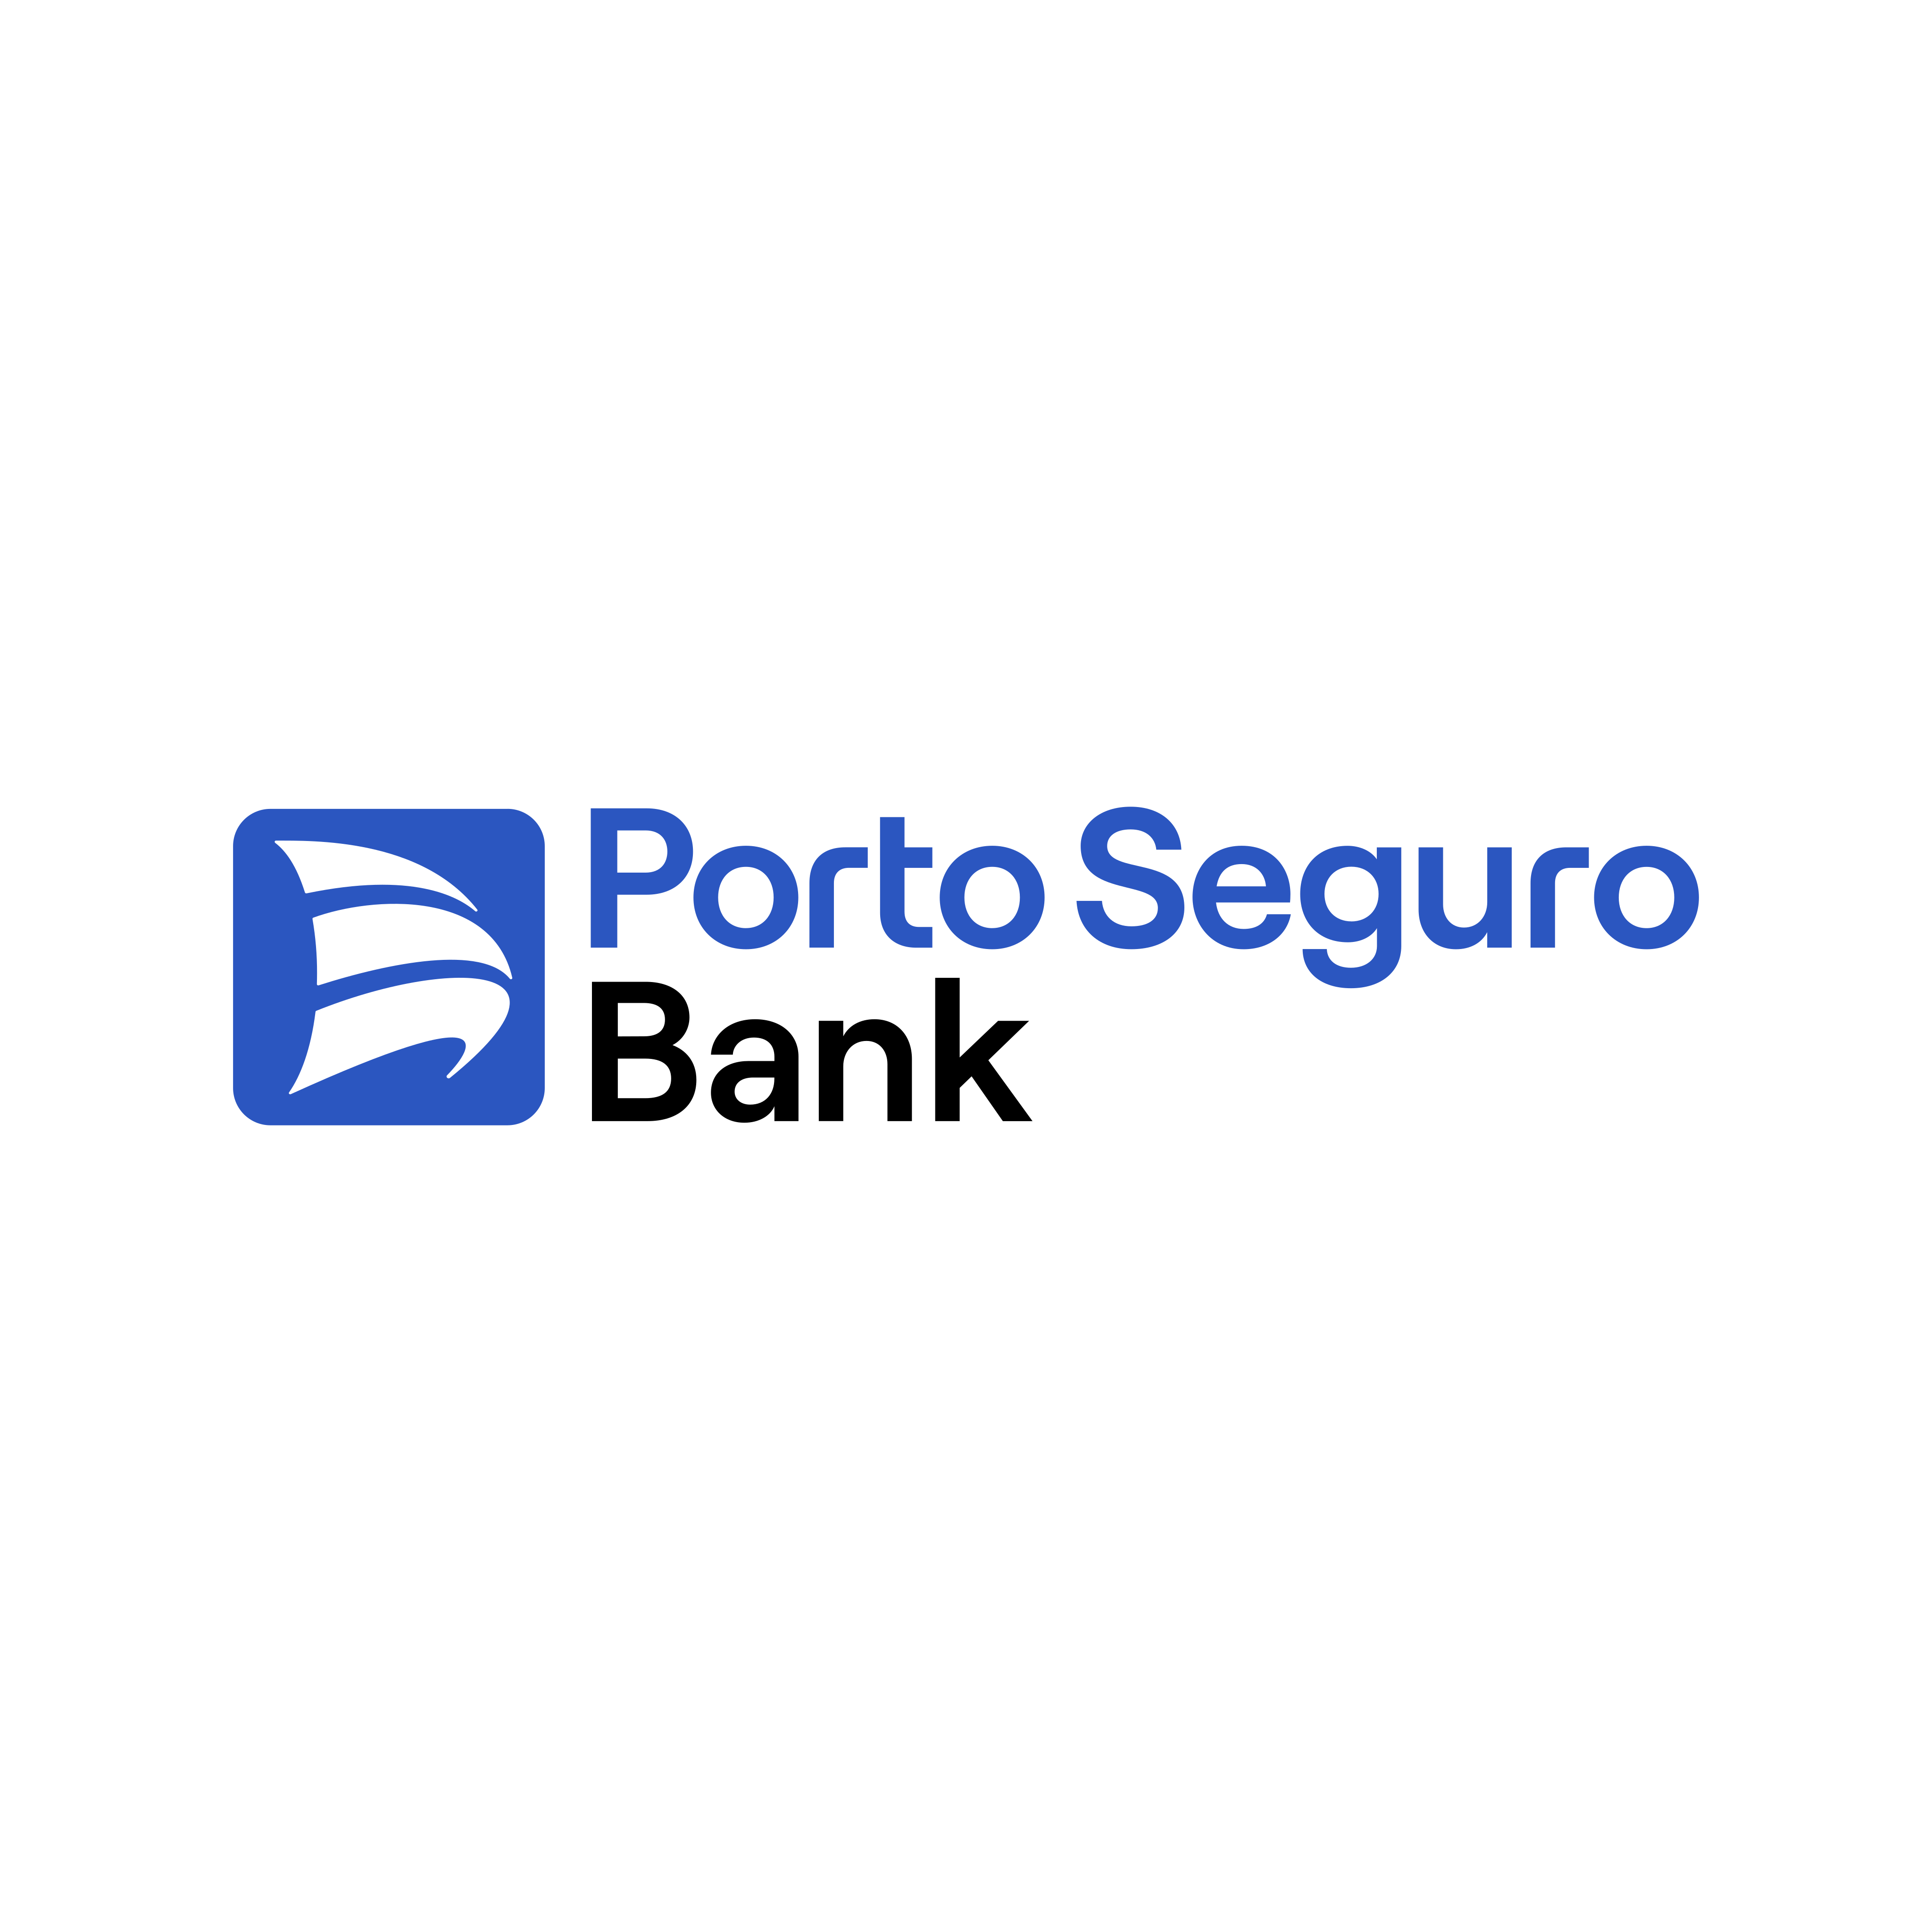 Porto Seguro Bank Logo PNG.